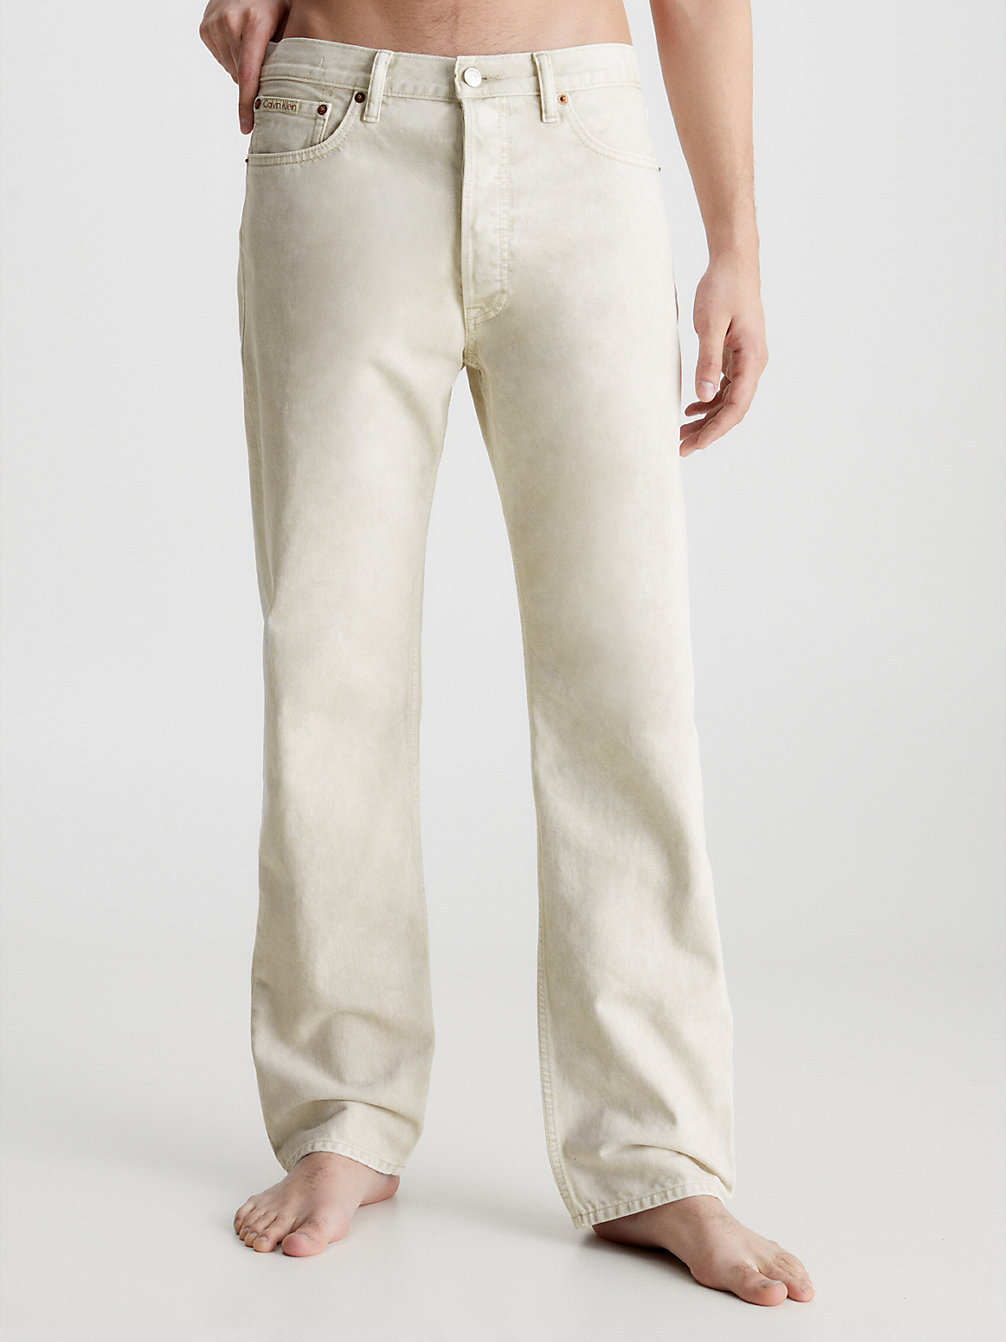 WHITE > Unisex Classic Straight Jeans – CK Standards > undefined Herren - Calvin Klein